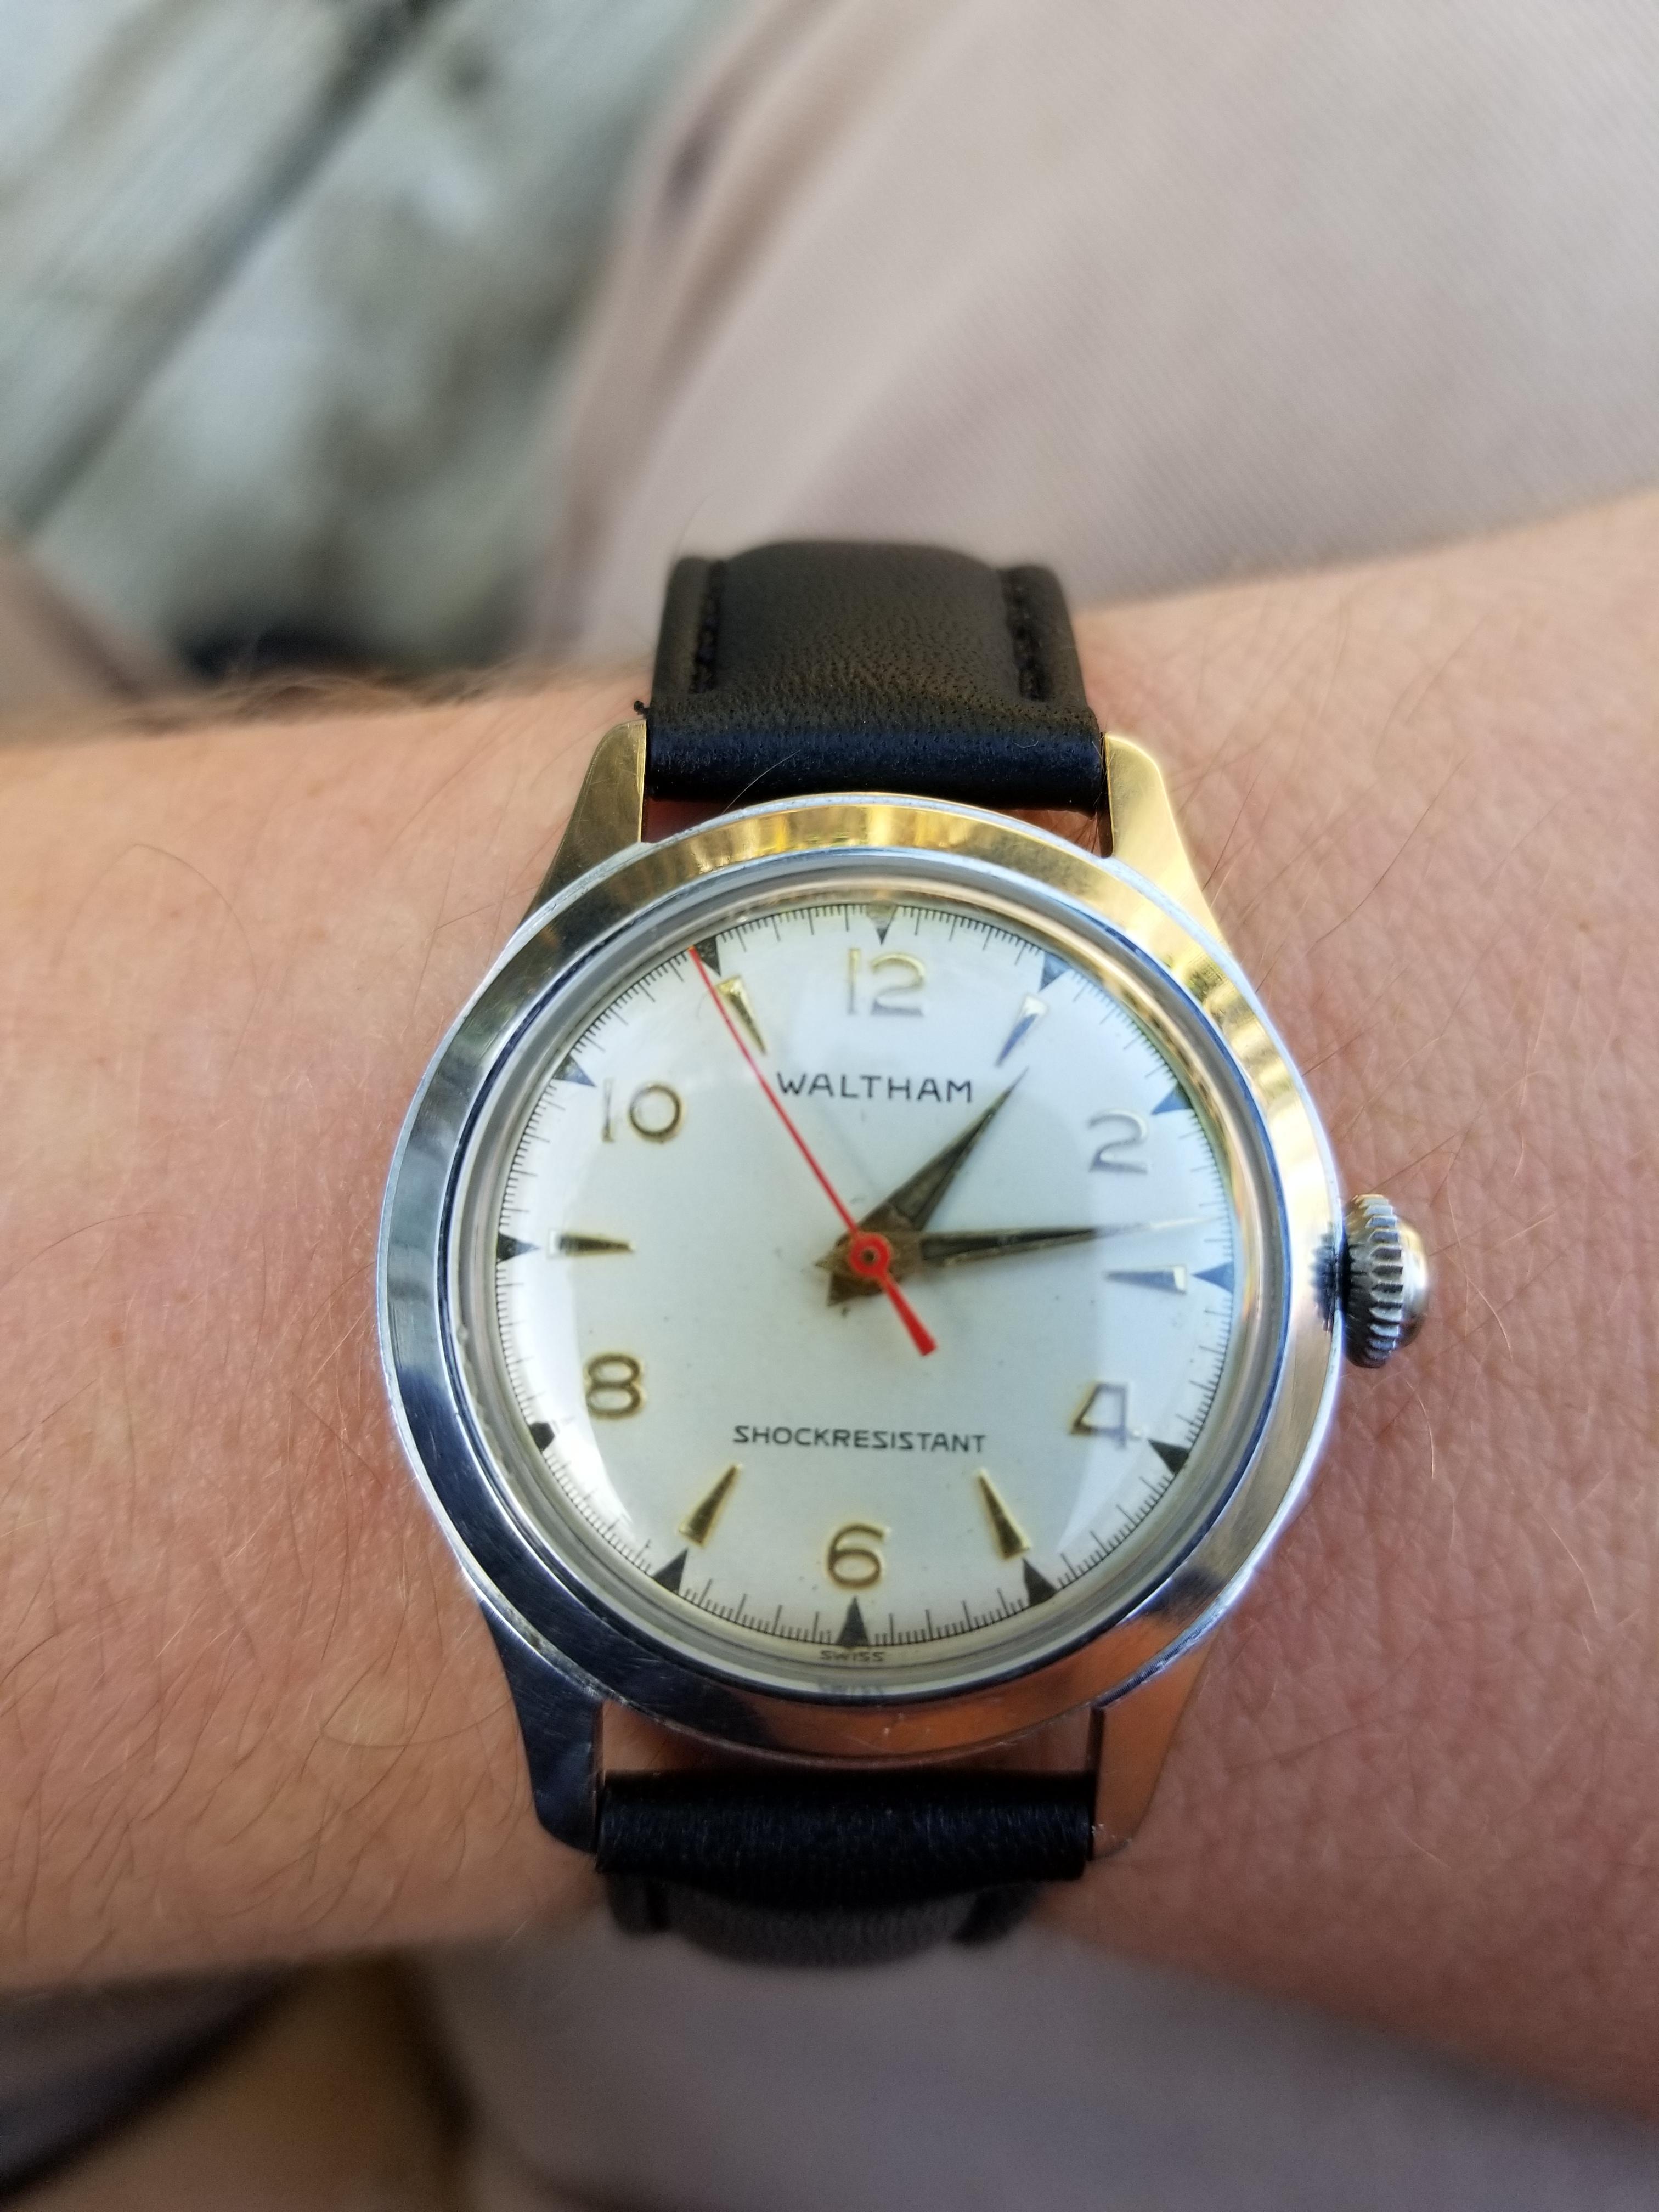 Wrist watch serial number lookup